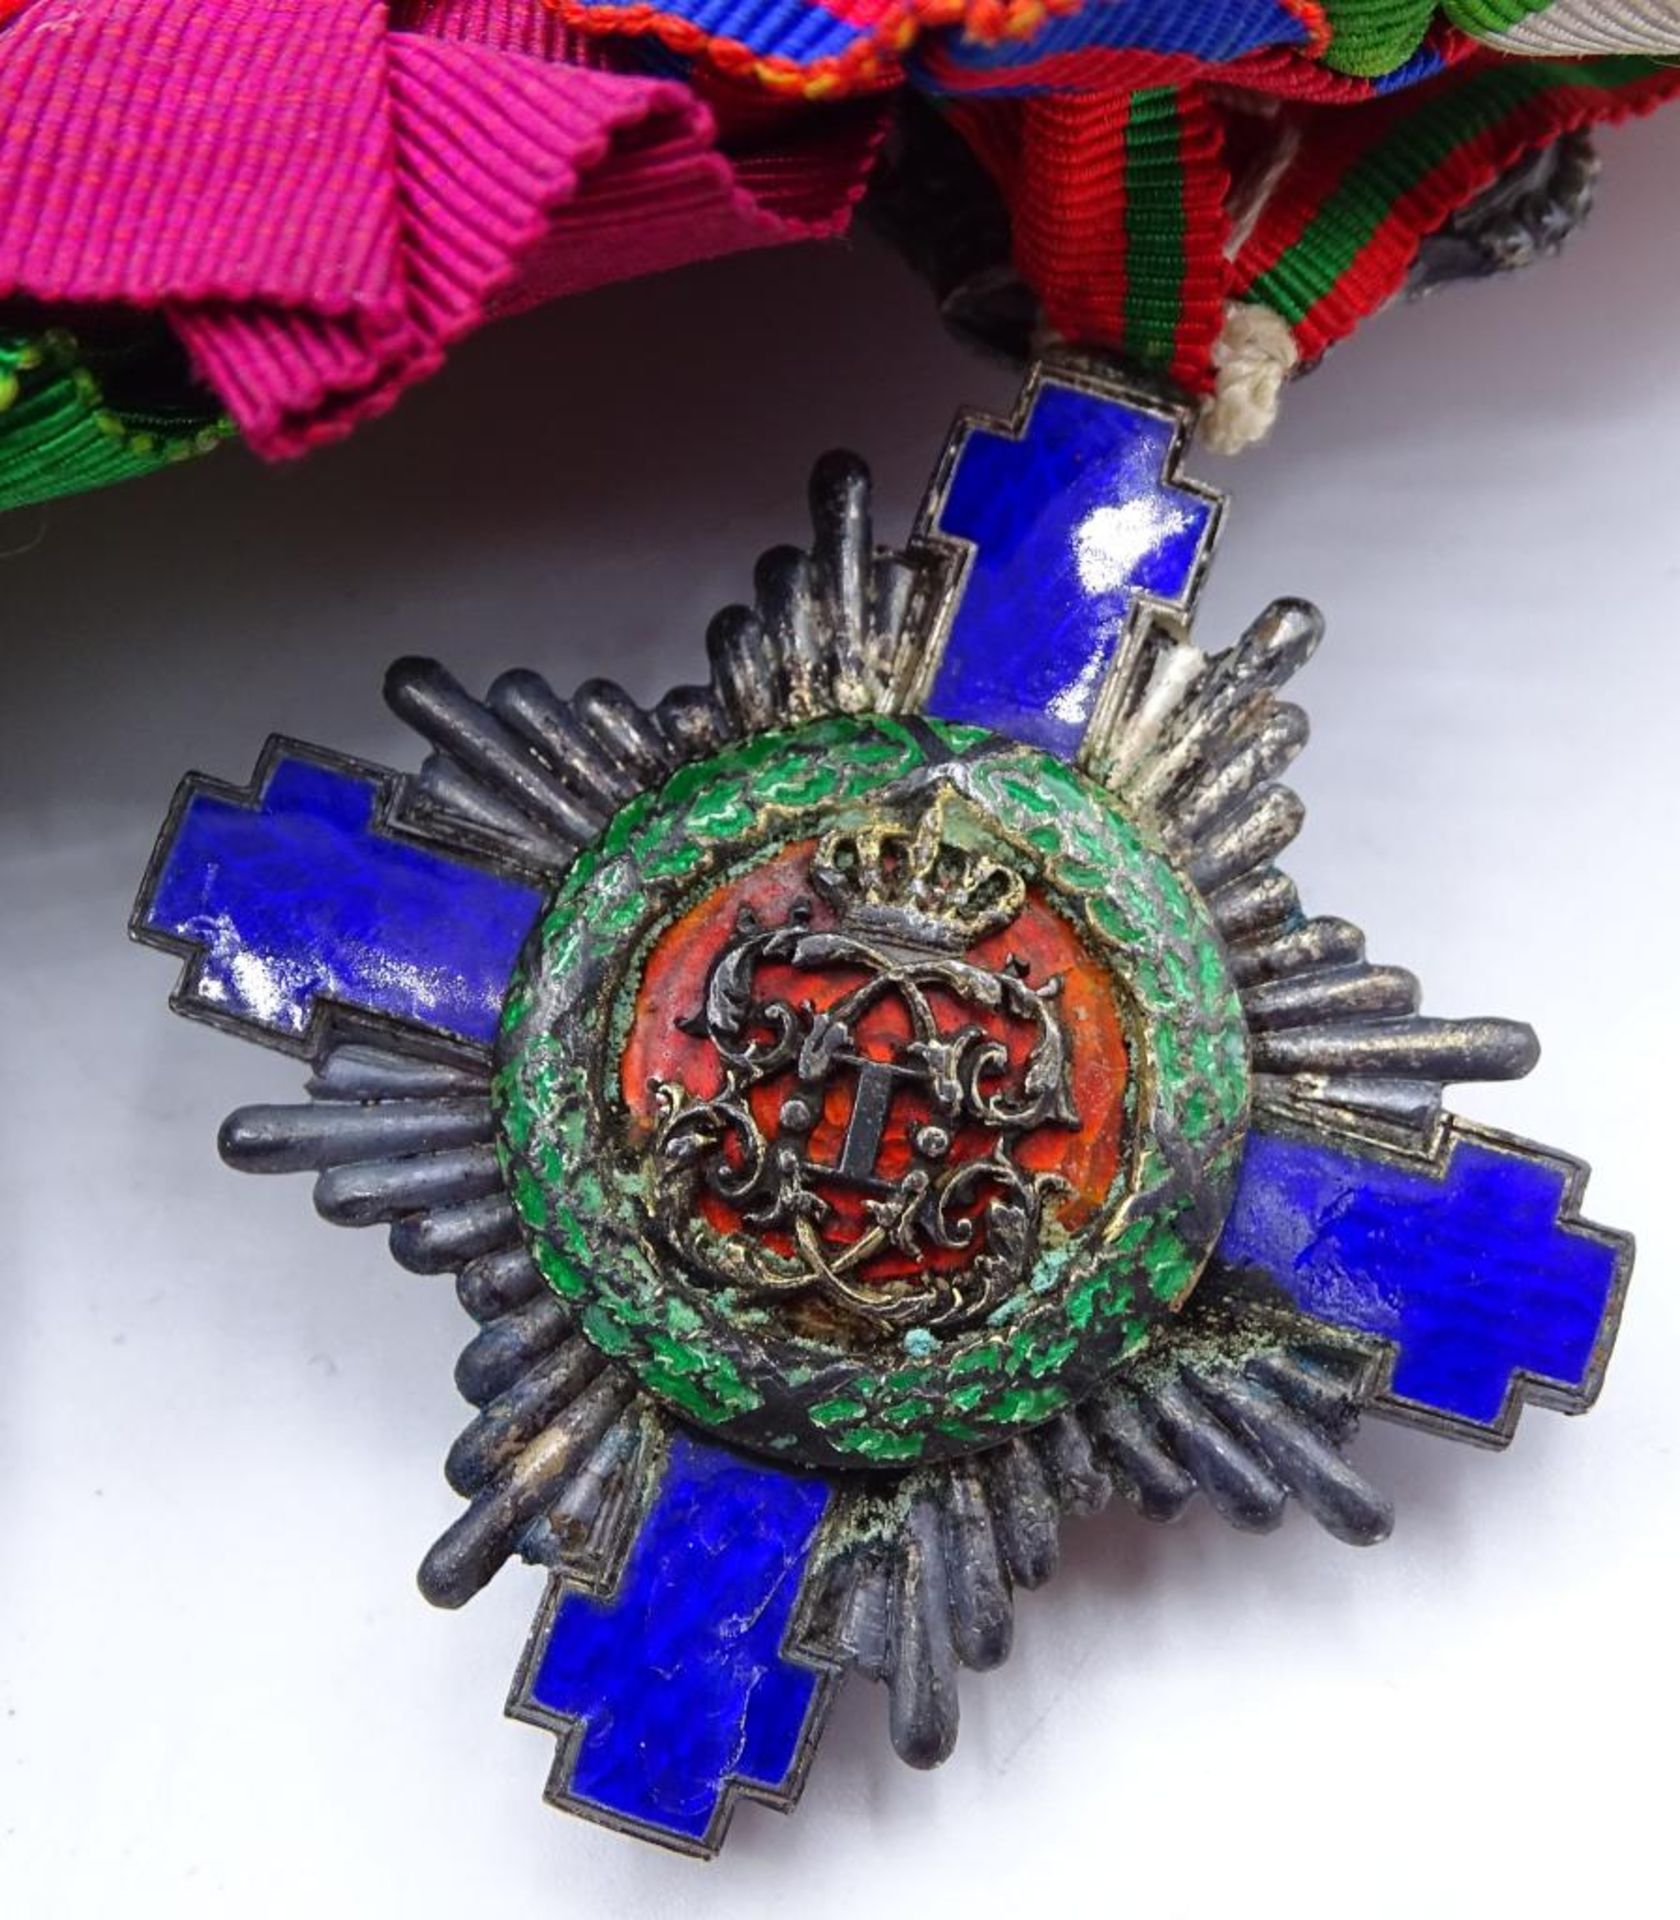 Lange Ordensspange mit 5 Orden/Abzeichen/Medaillen,Königreich Rumänien Orden vom Stern Rumäniens- - Bild 7 aus 10